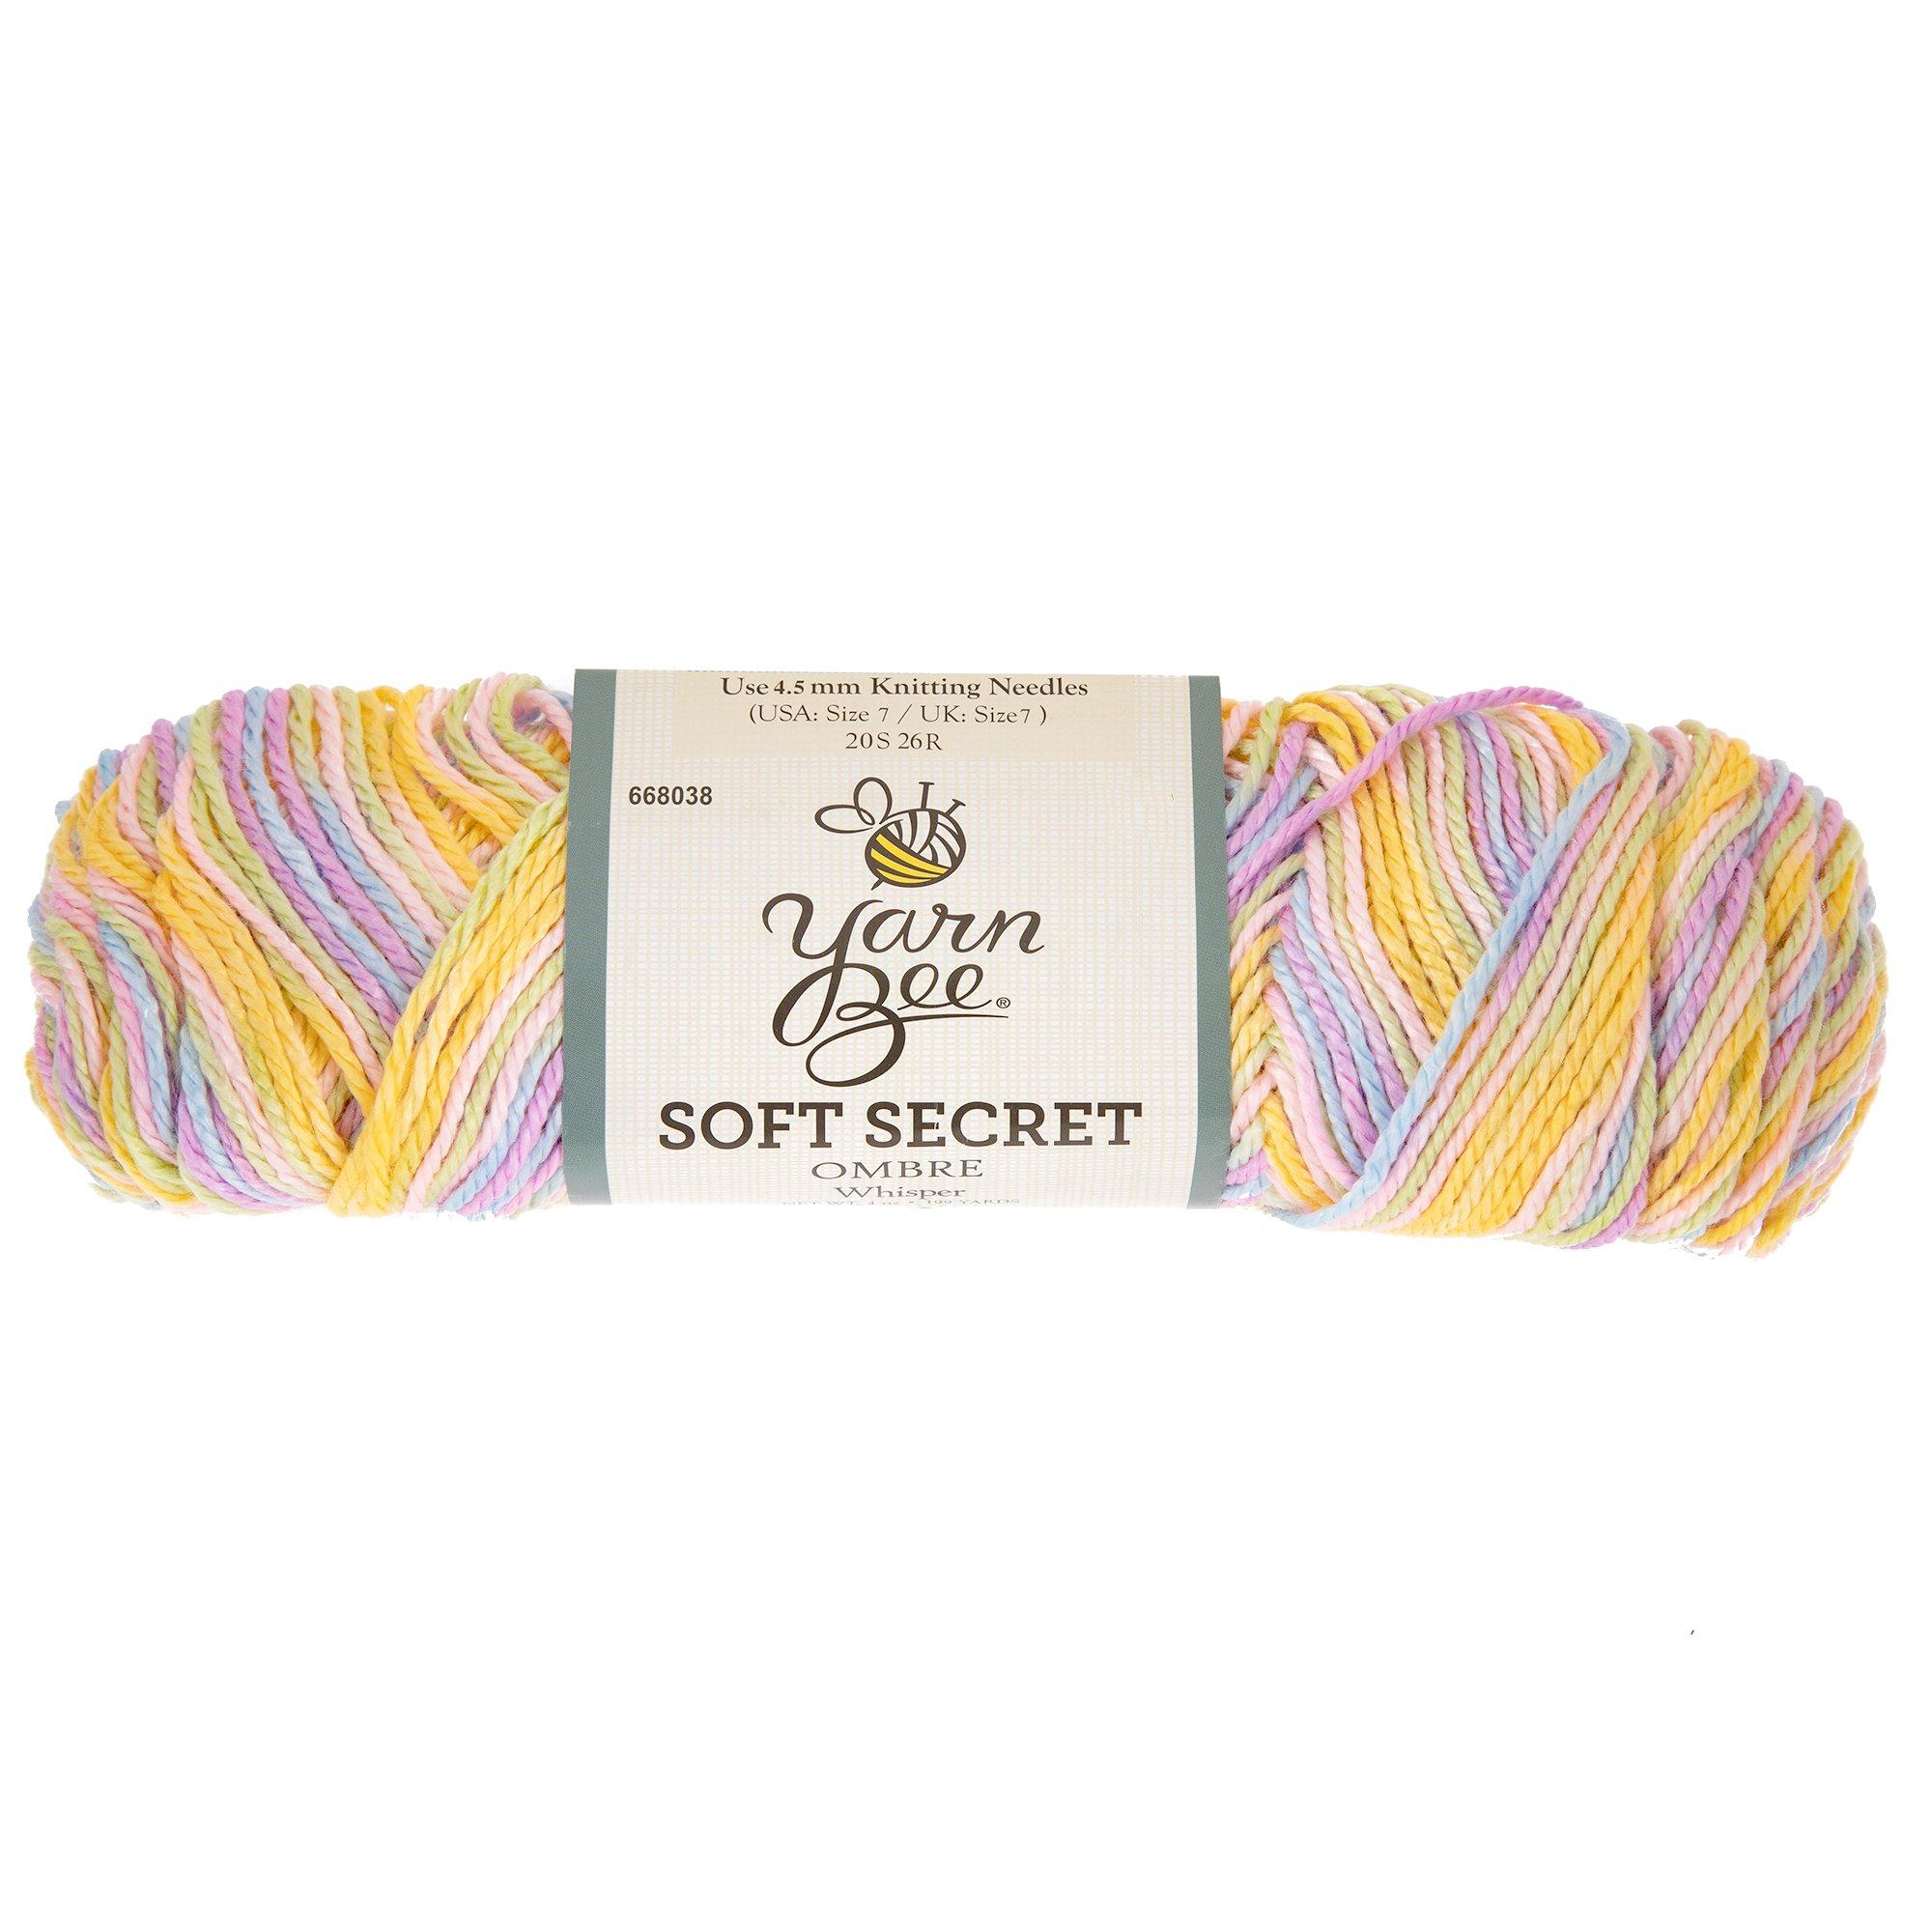 Yarn Bee Soft & Sleek Yarn